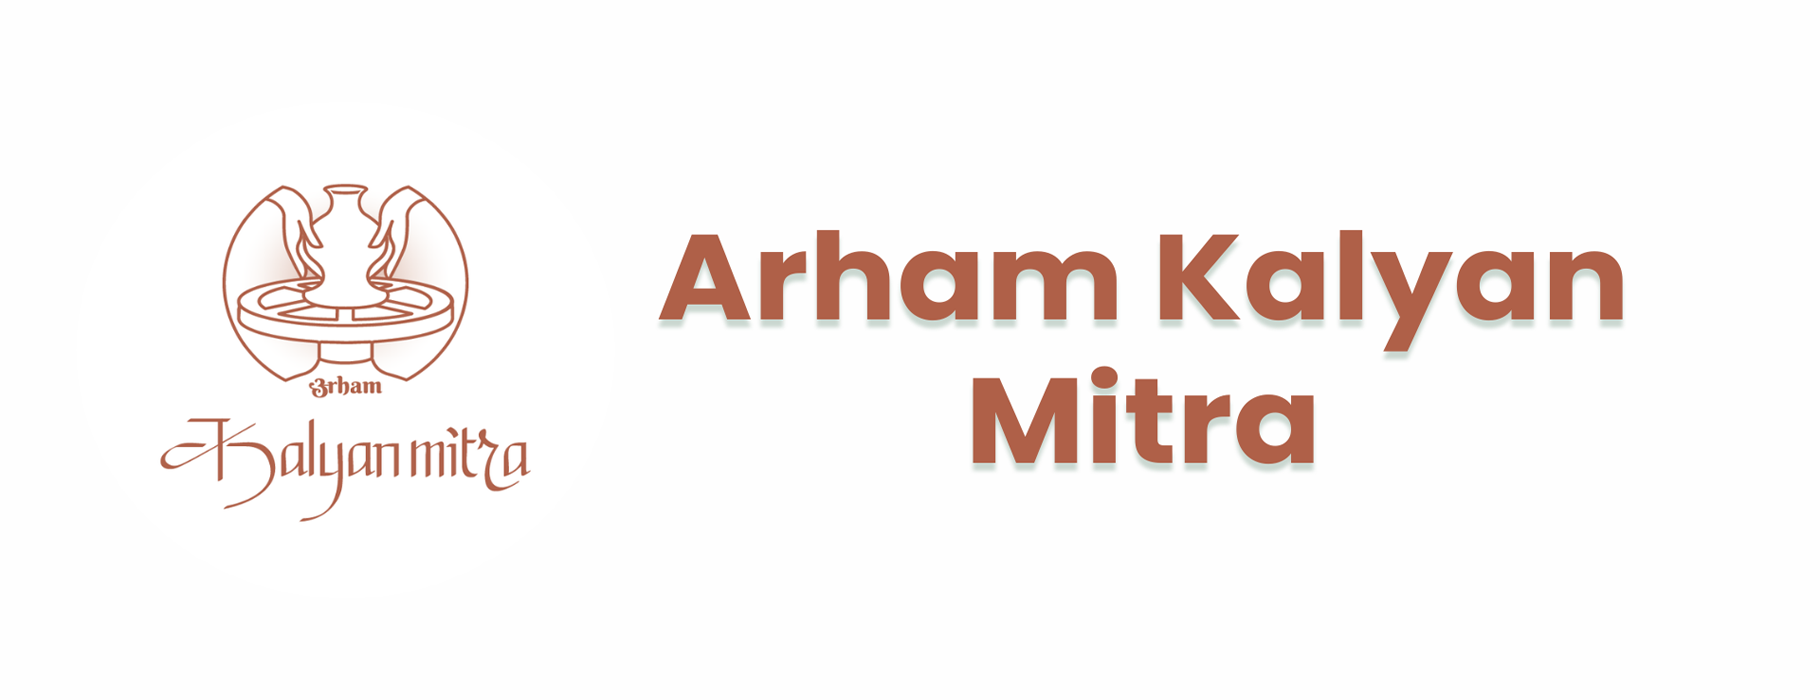 Arham Kalyan Mitra